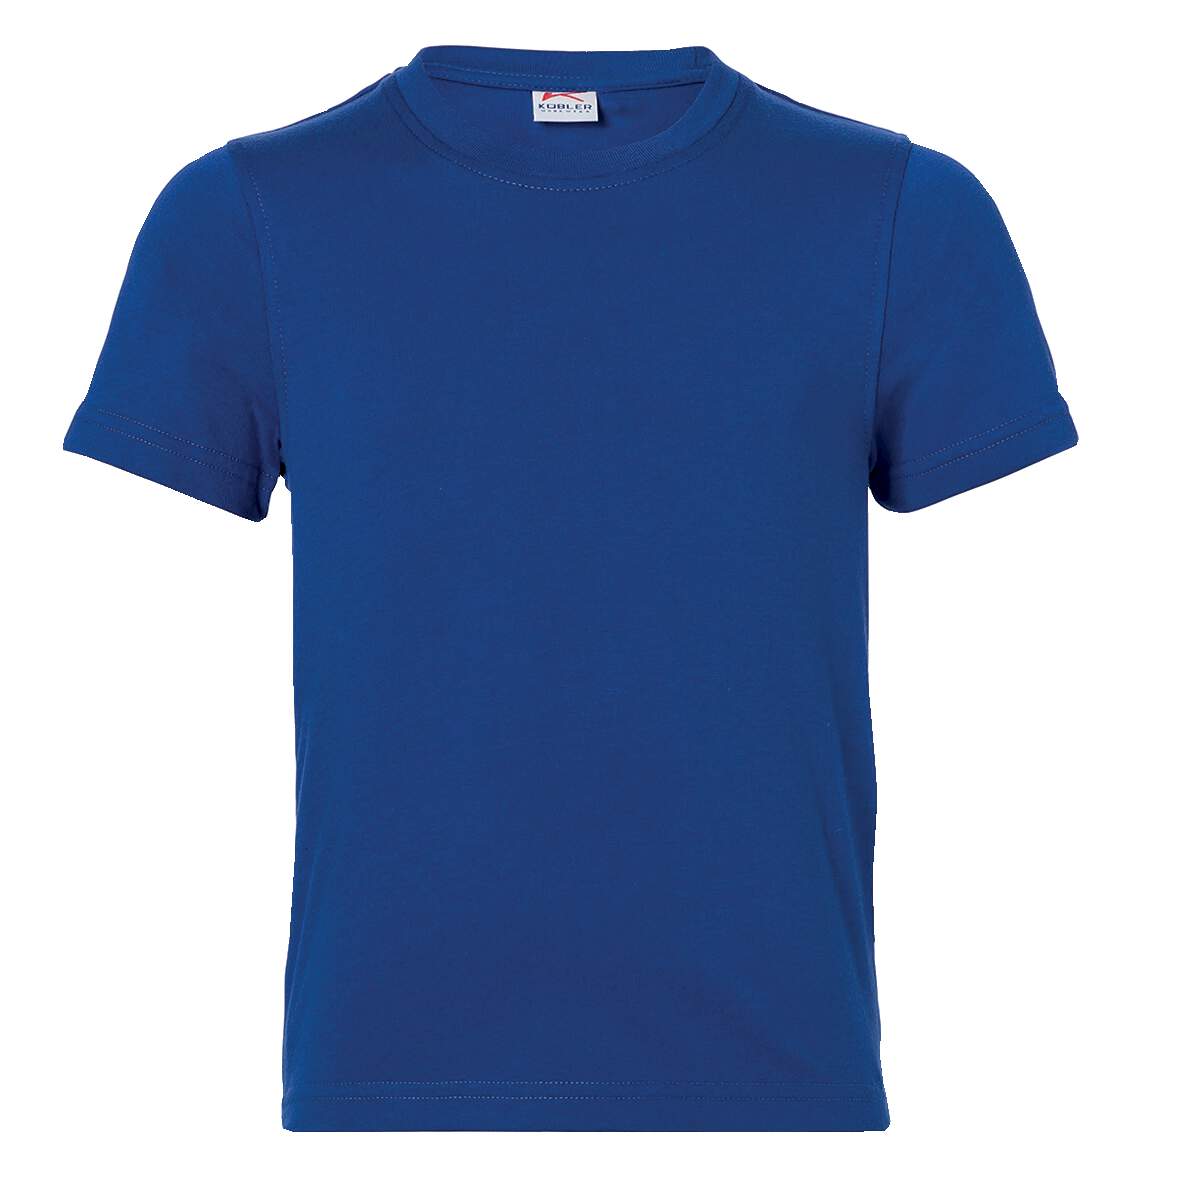 1253974 - T-Shirt Jungen Gr.164 kbl.blau